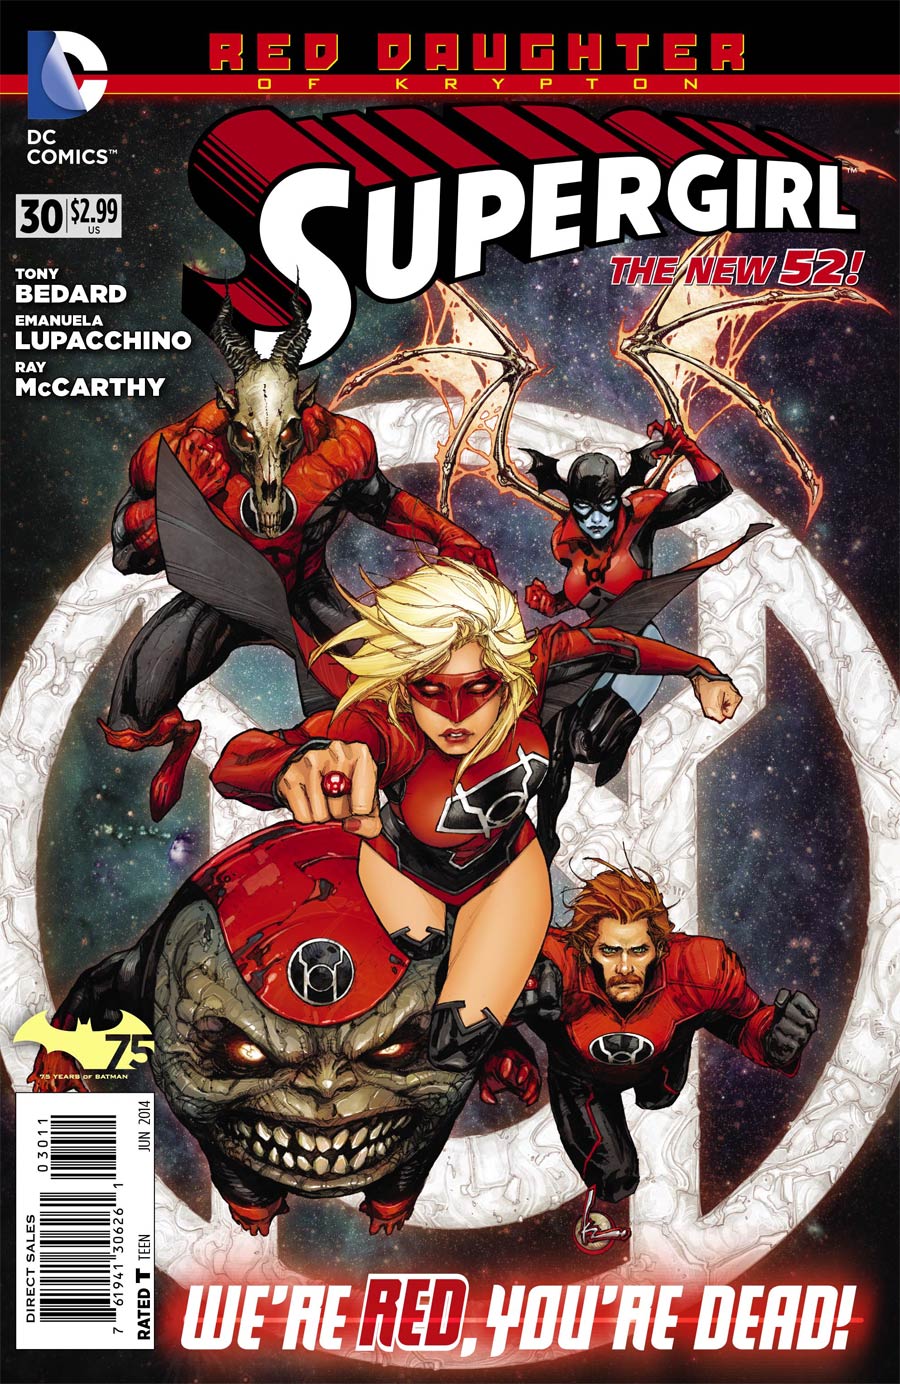 Supergirl Vol 6 #30 (Red Daughter Of Krypton Tie-In)